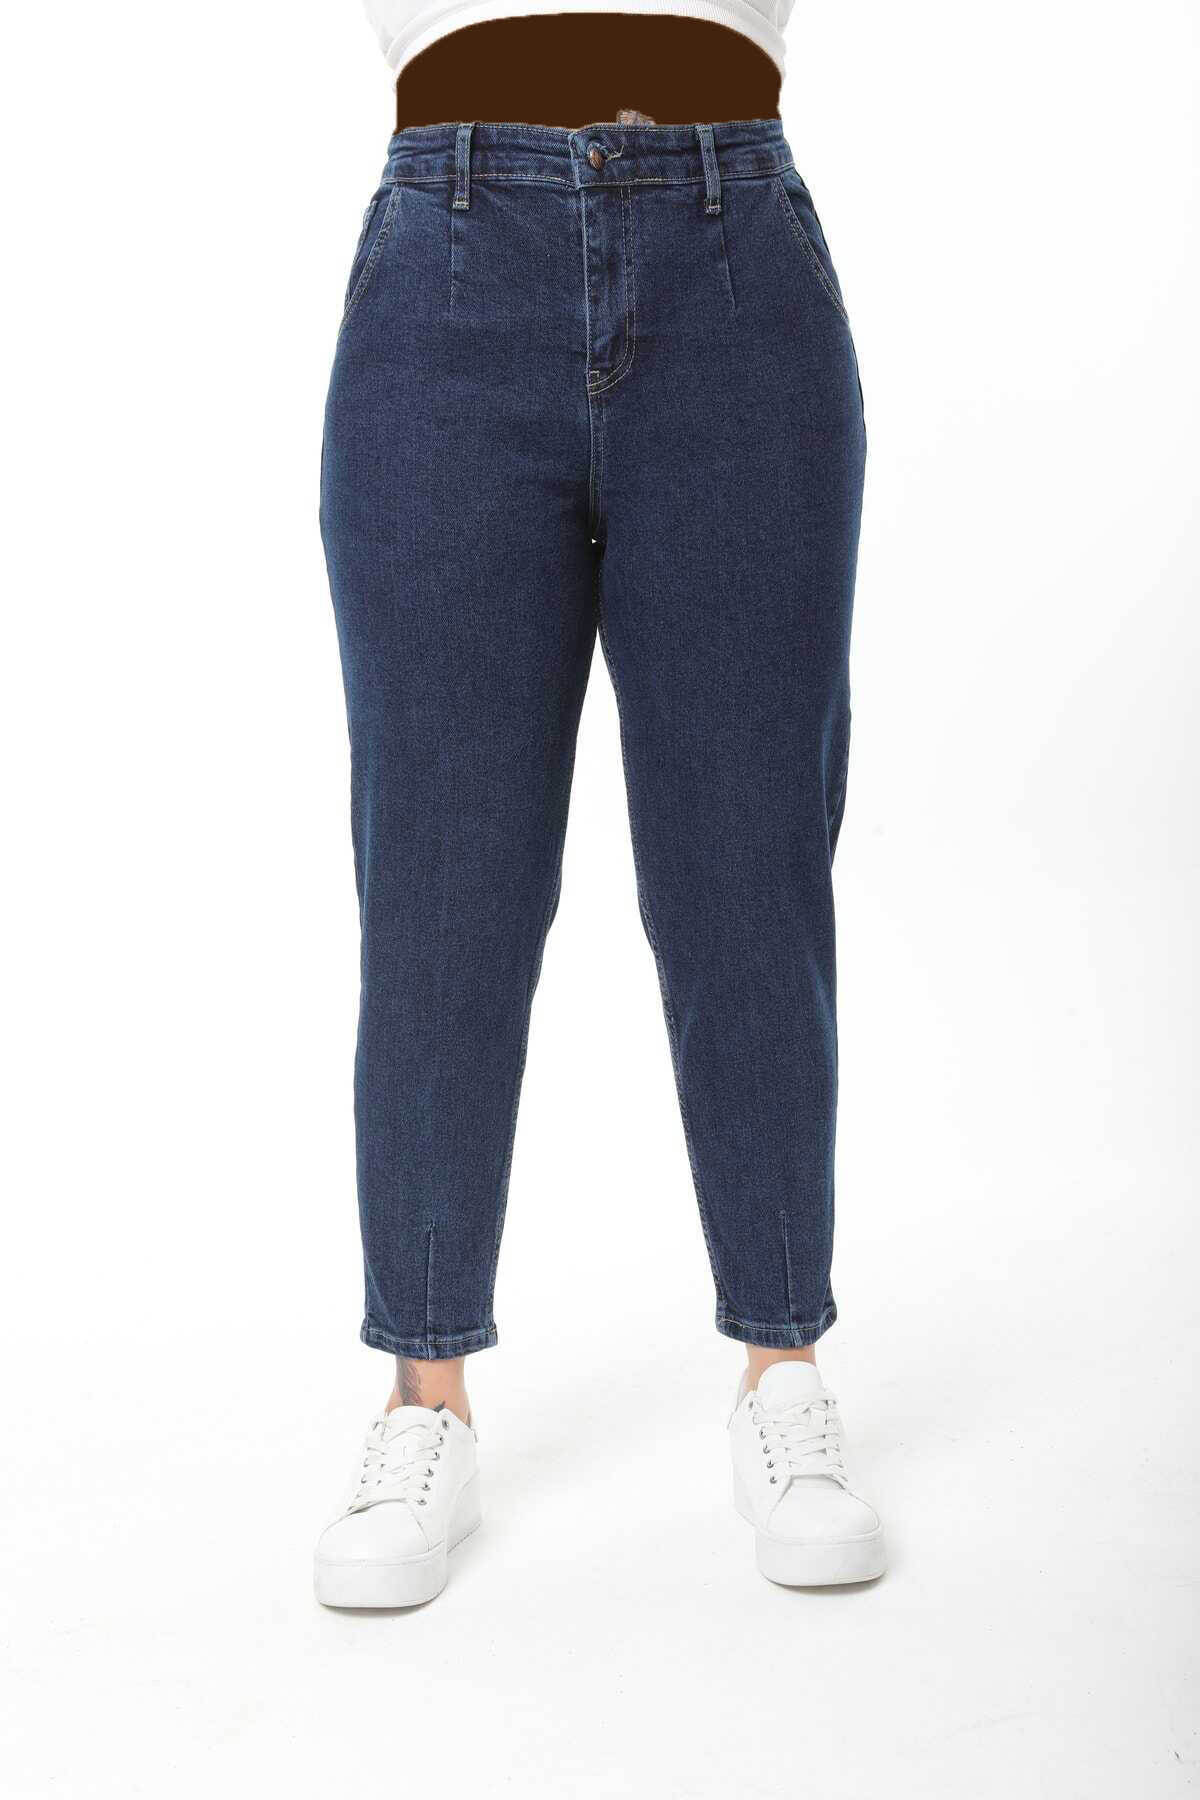 شلوار جین زنانه سایز بزرگ آبی برند CEDY DENIM